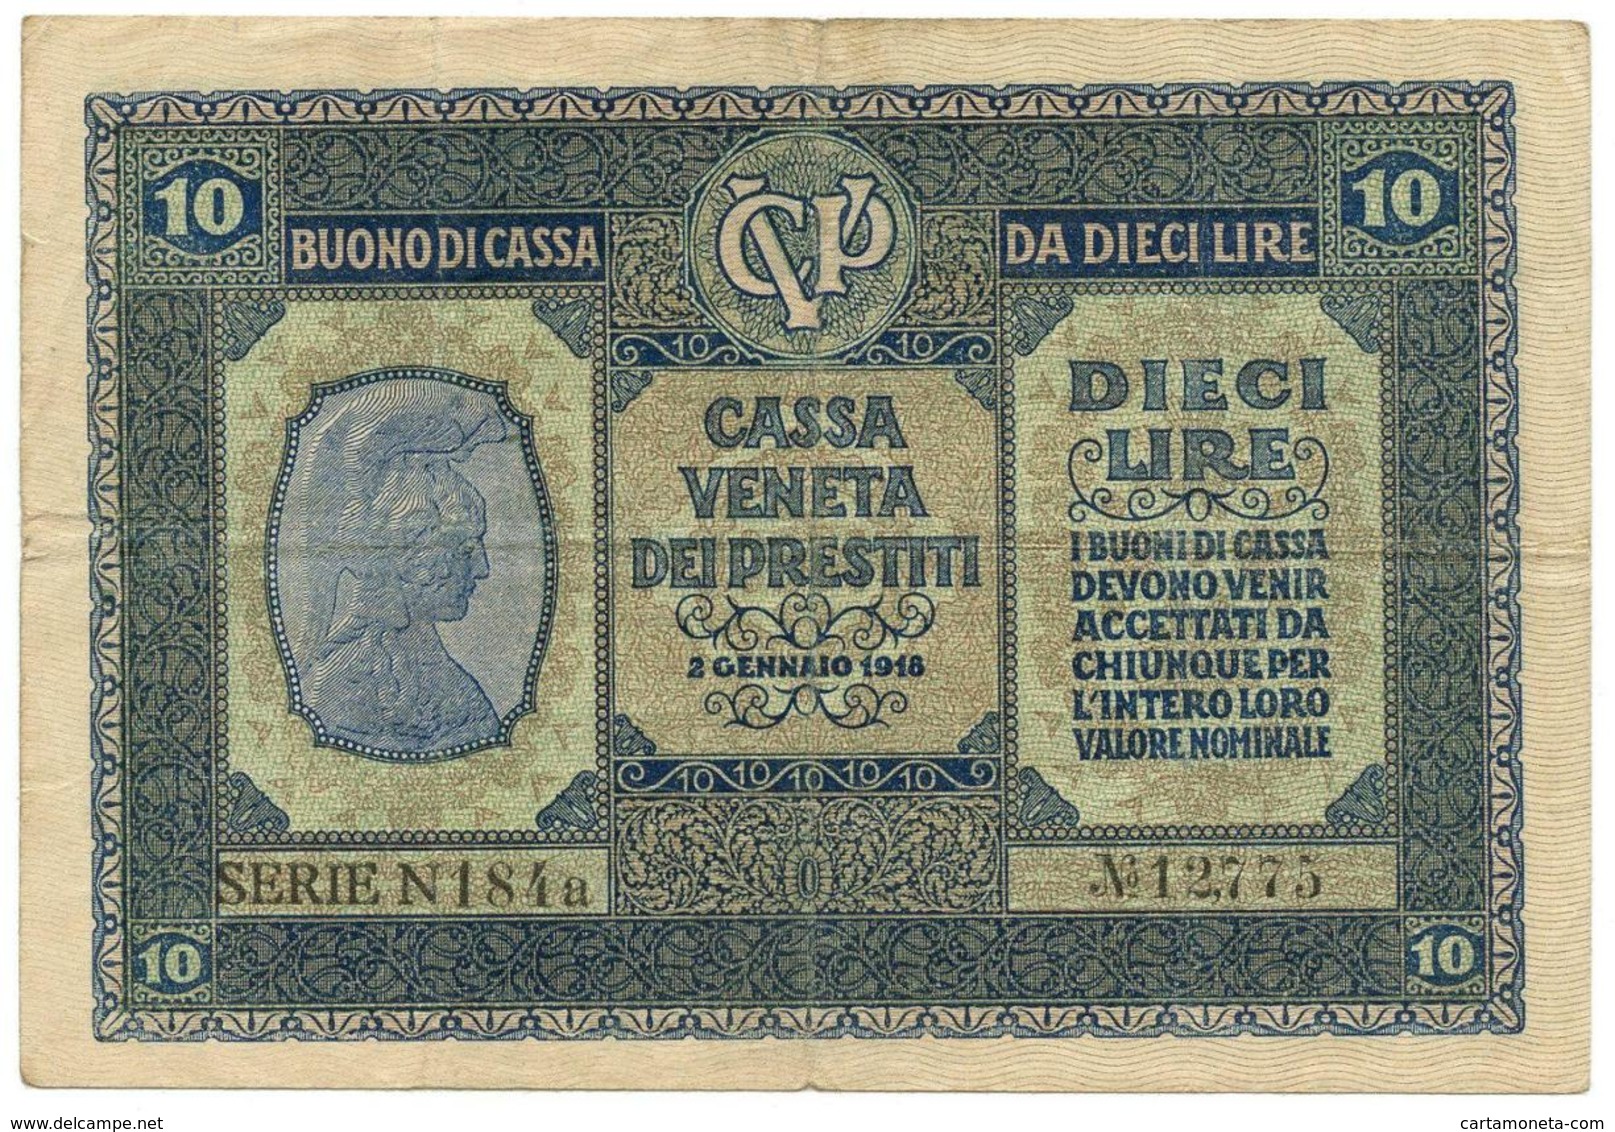 10 LIRE CASSA VENETA DEI PRESTITI BUONO DI CASSA 02/01/1918 BB/BB+ - Austrian Occupation Of Venezia